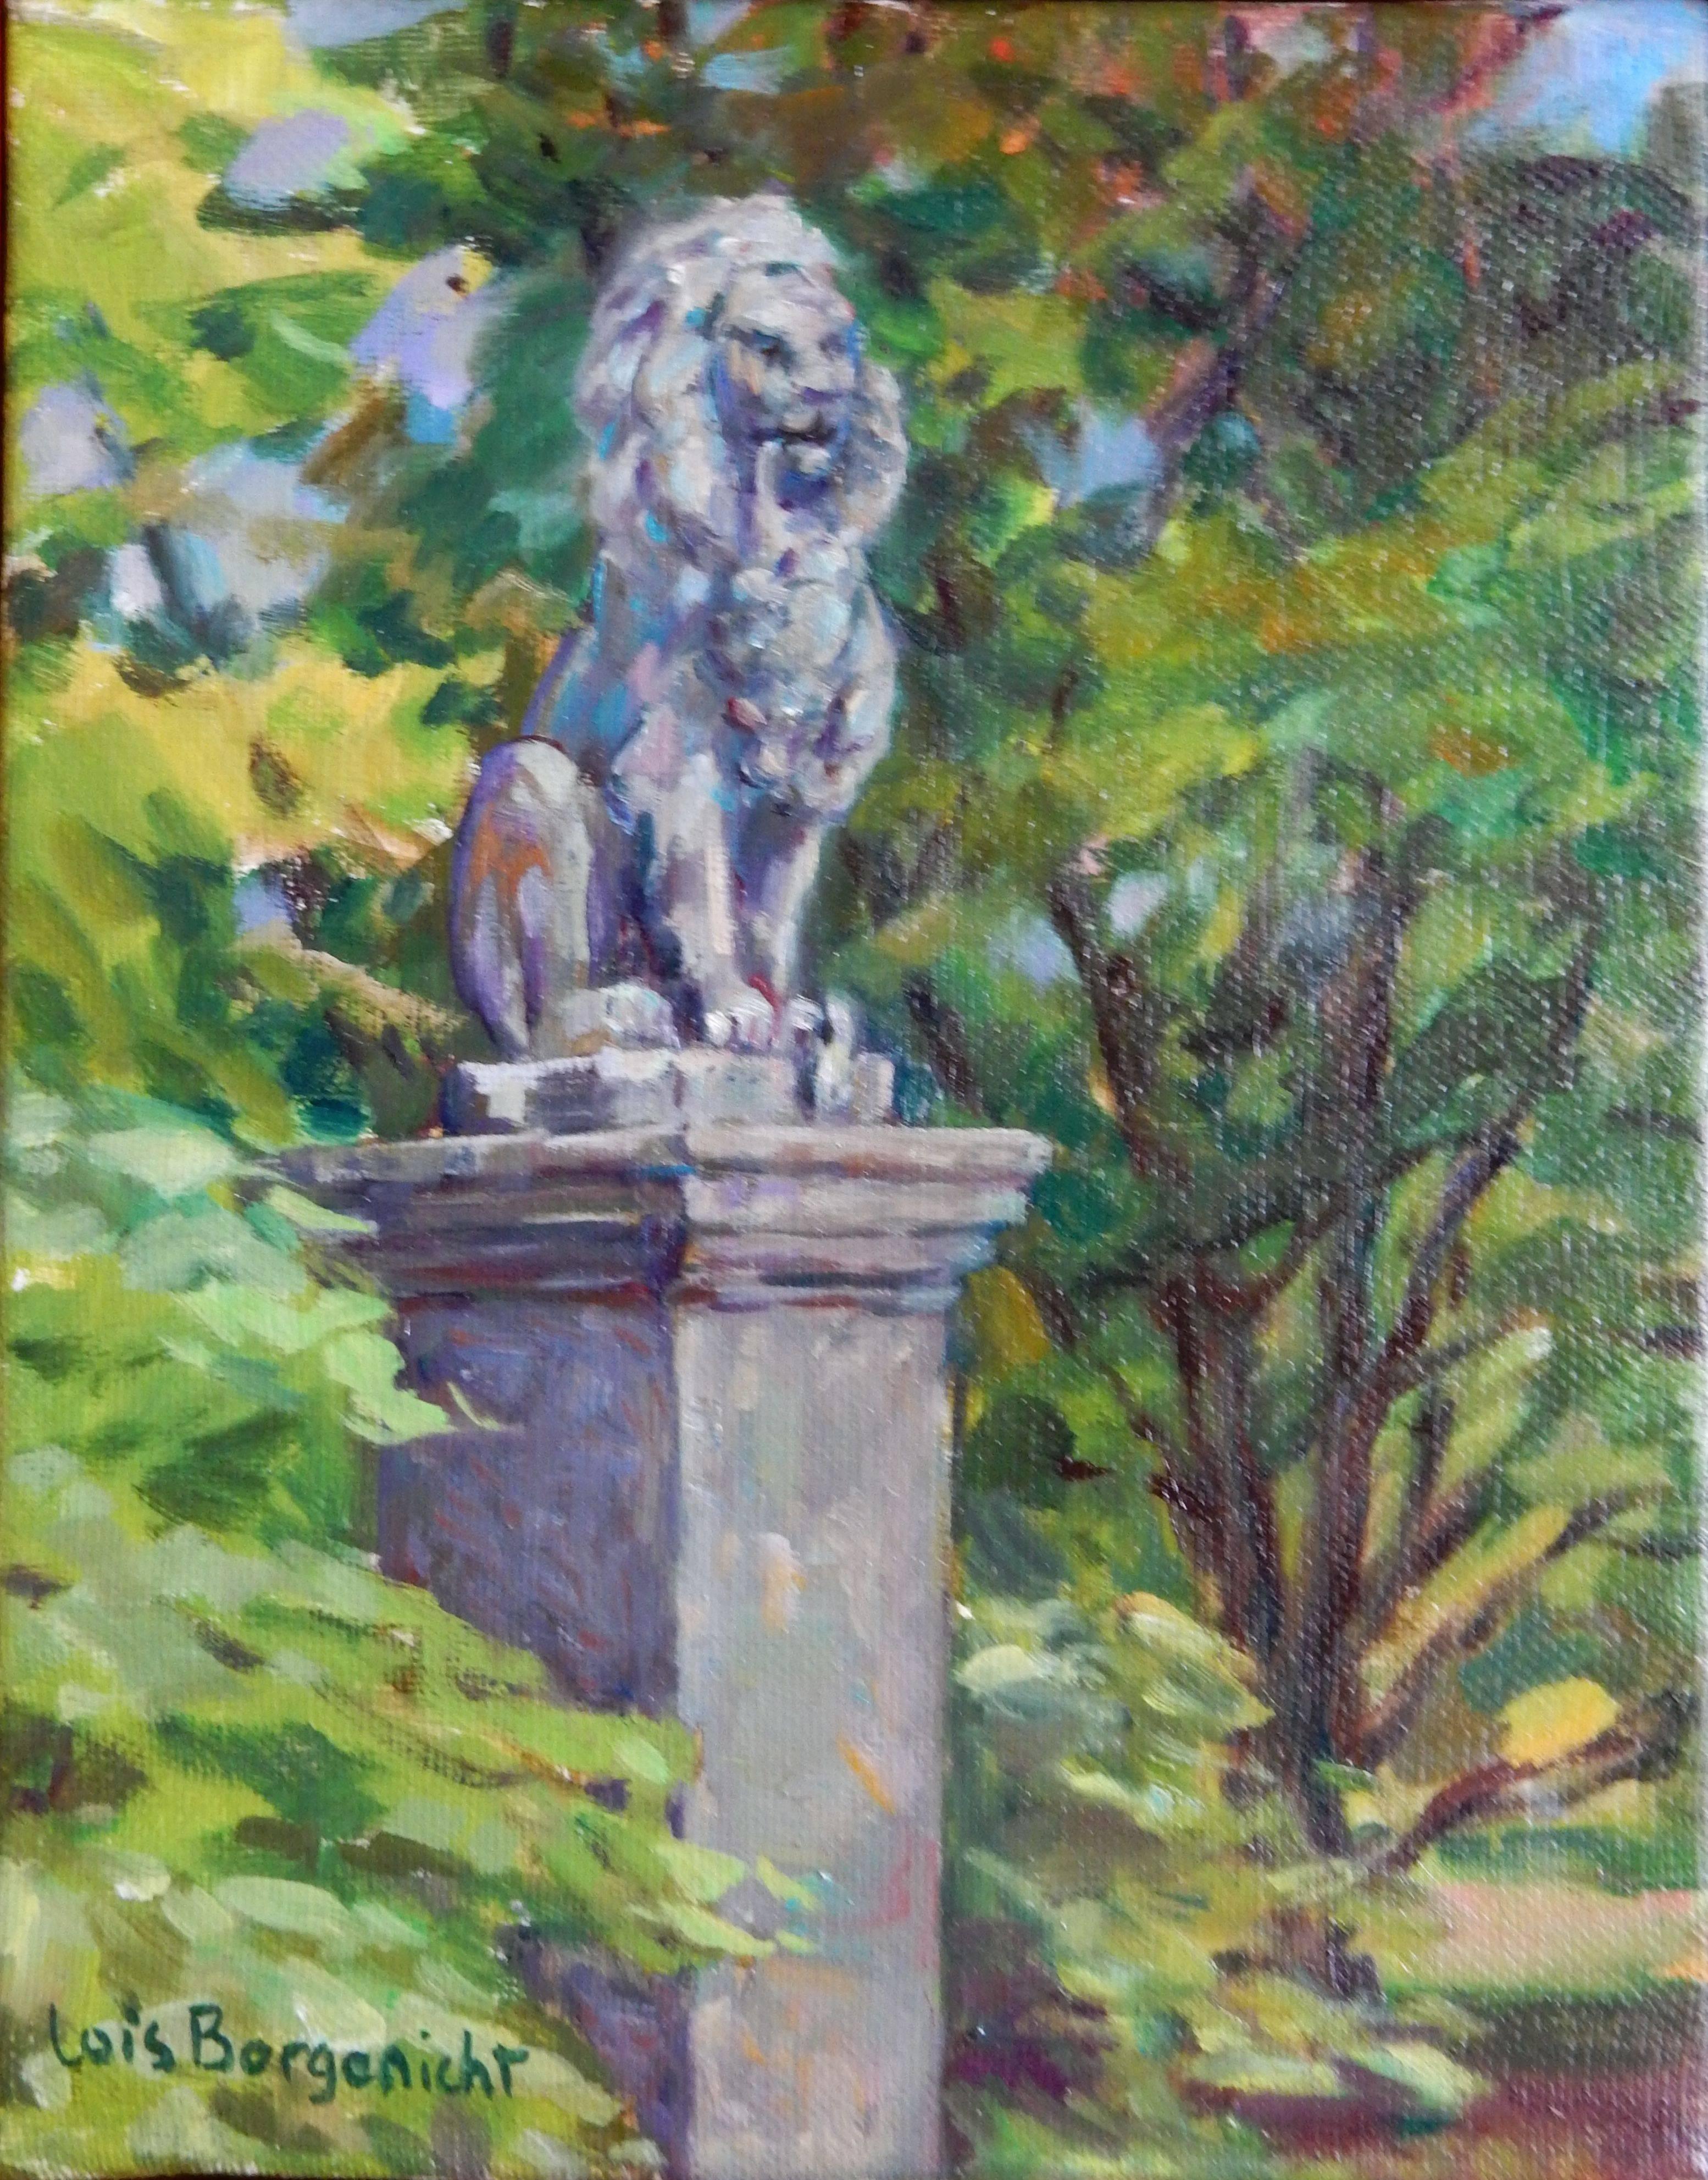 Lois Borgenicht Landscape Painting - Lion at Cylburn